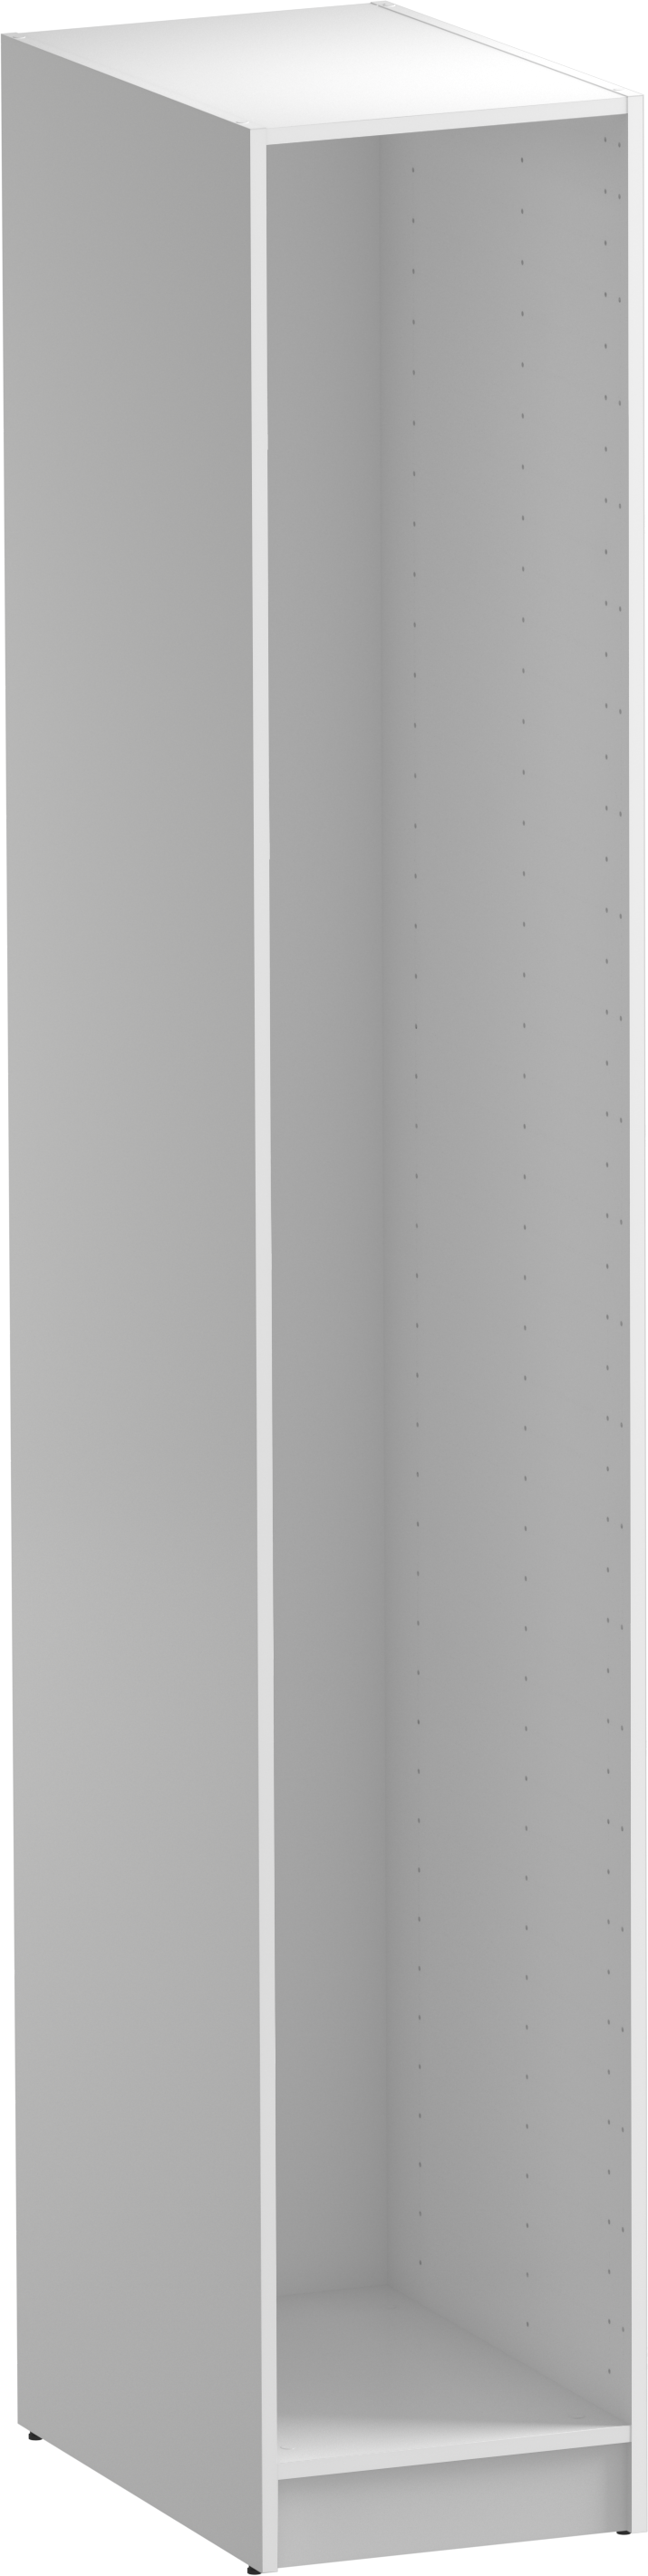 Módulo de armario spaceo home blanco 40x240x60 cm